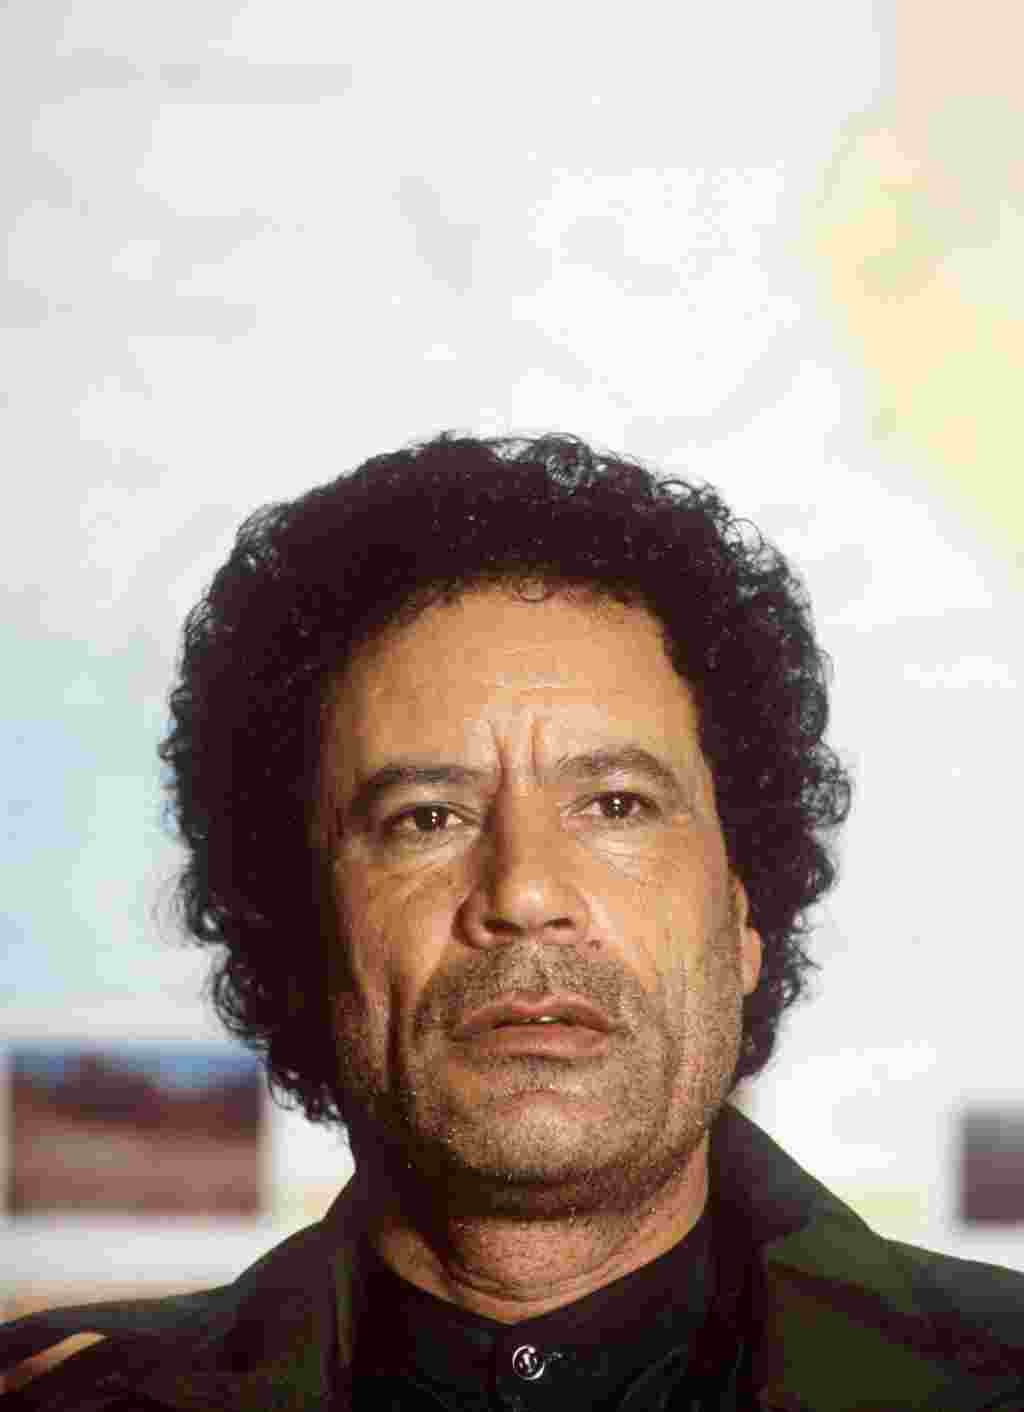 En 2003, Gadhafi conmemoró 34 años al mando y se convirte en el líder en poder por más tiempo en el mundo árabe.